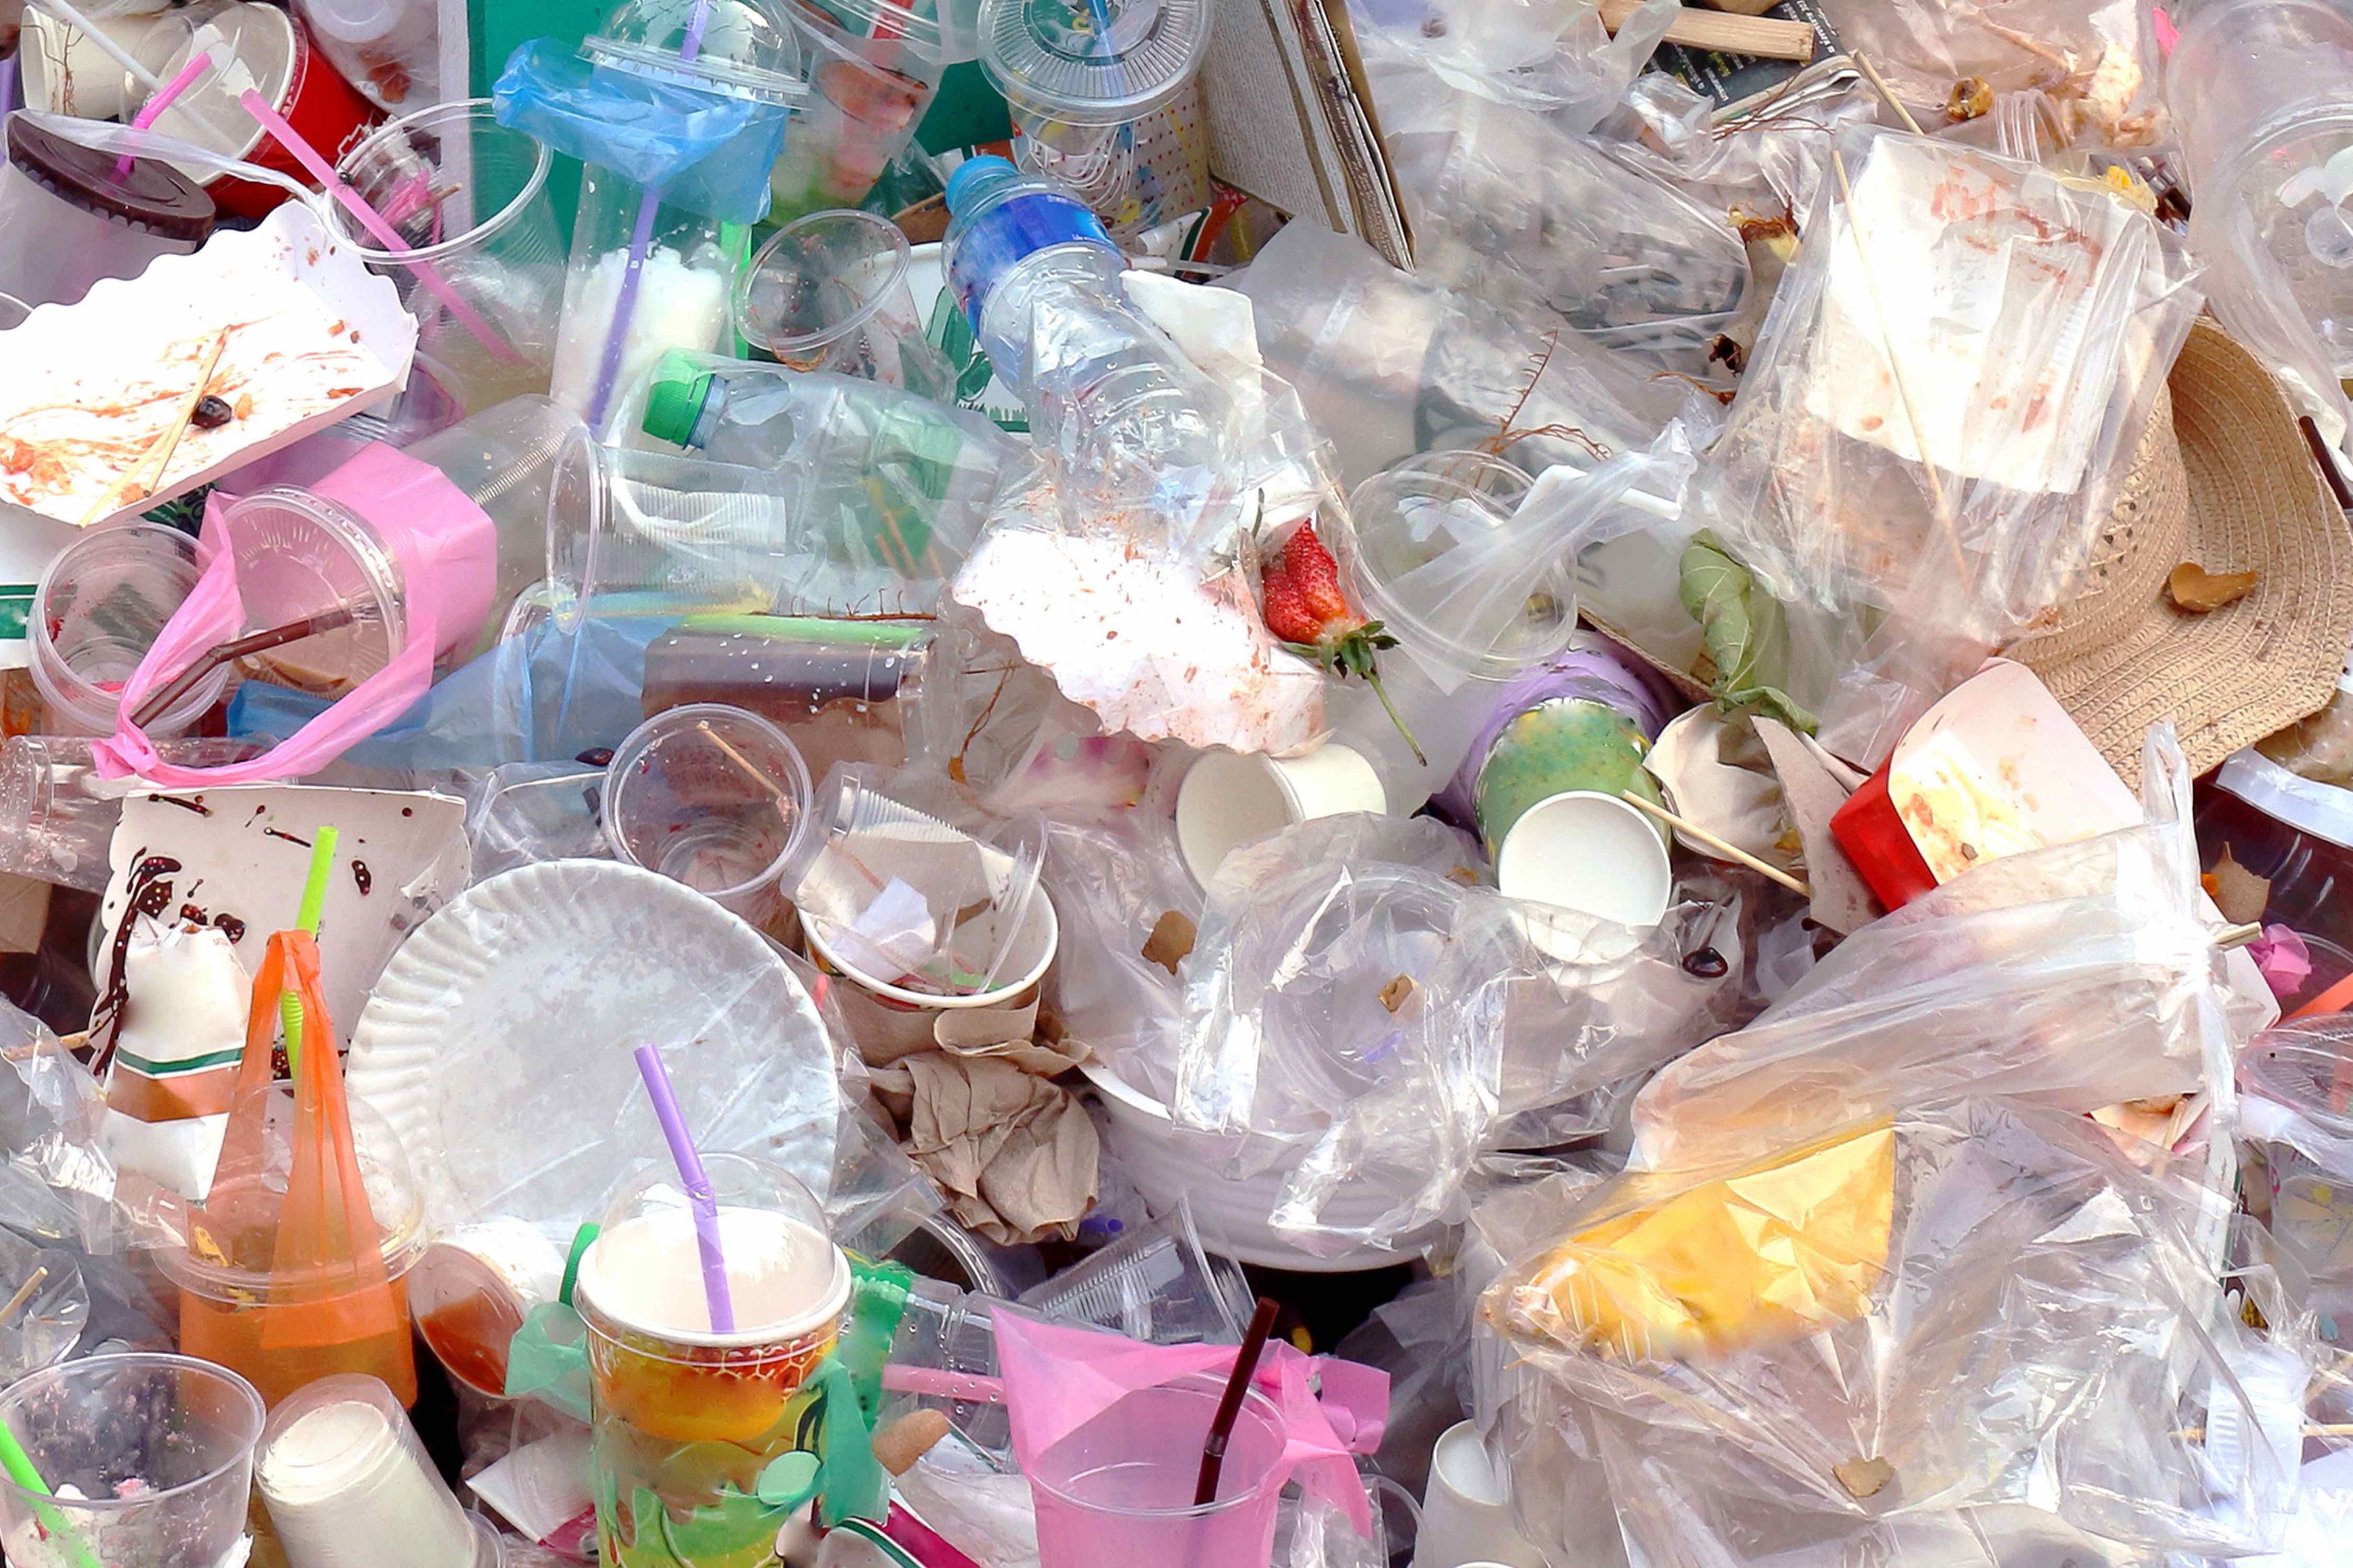 Cintai bumi, kurangi pemakaian plastik!